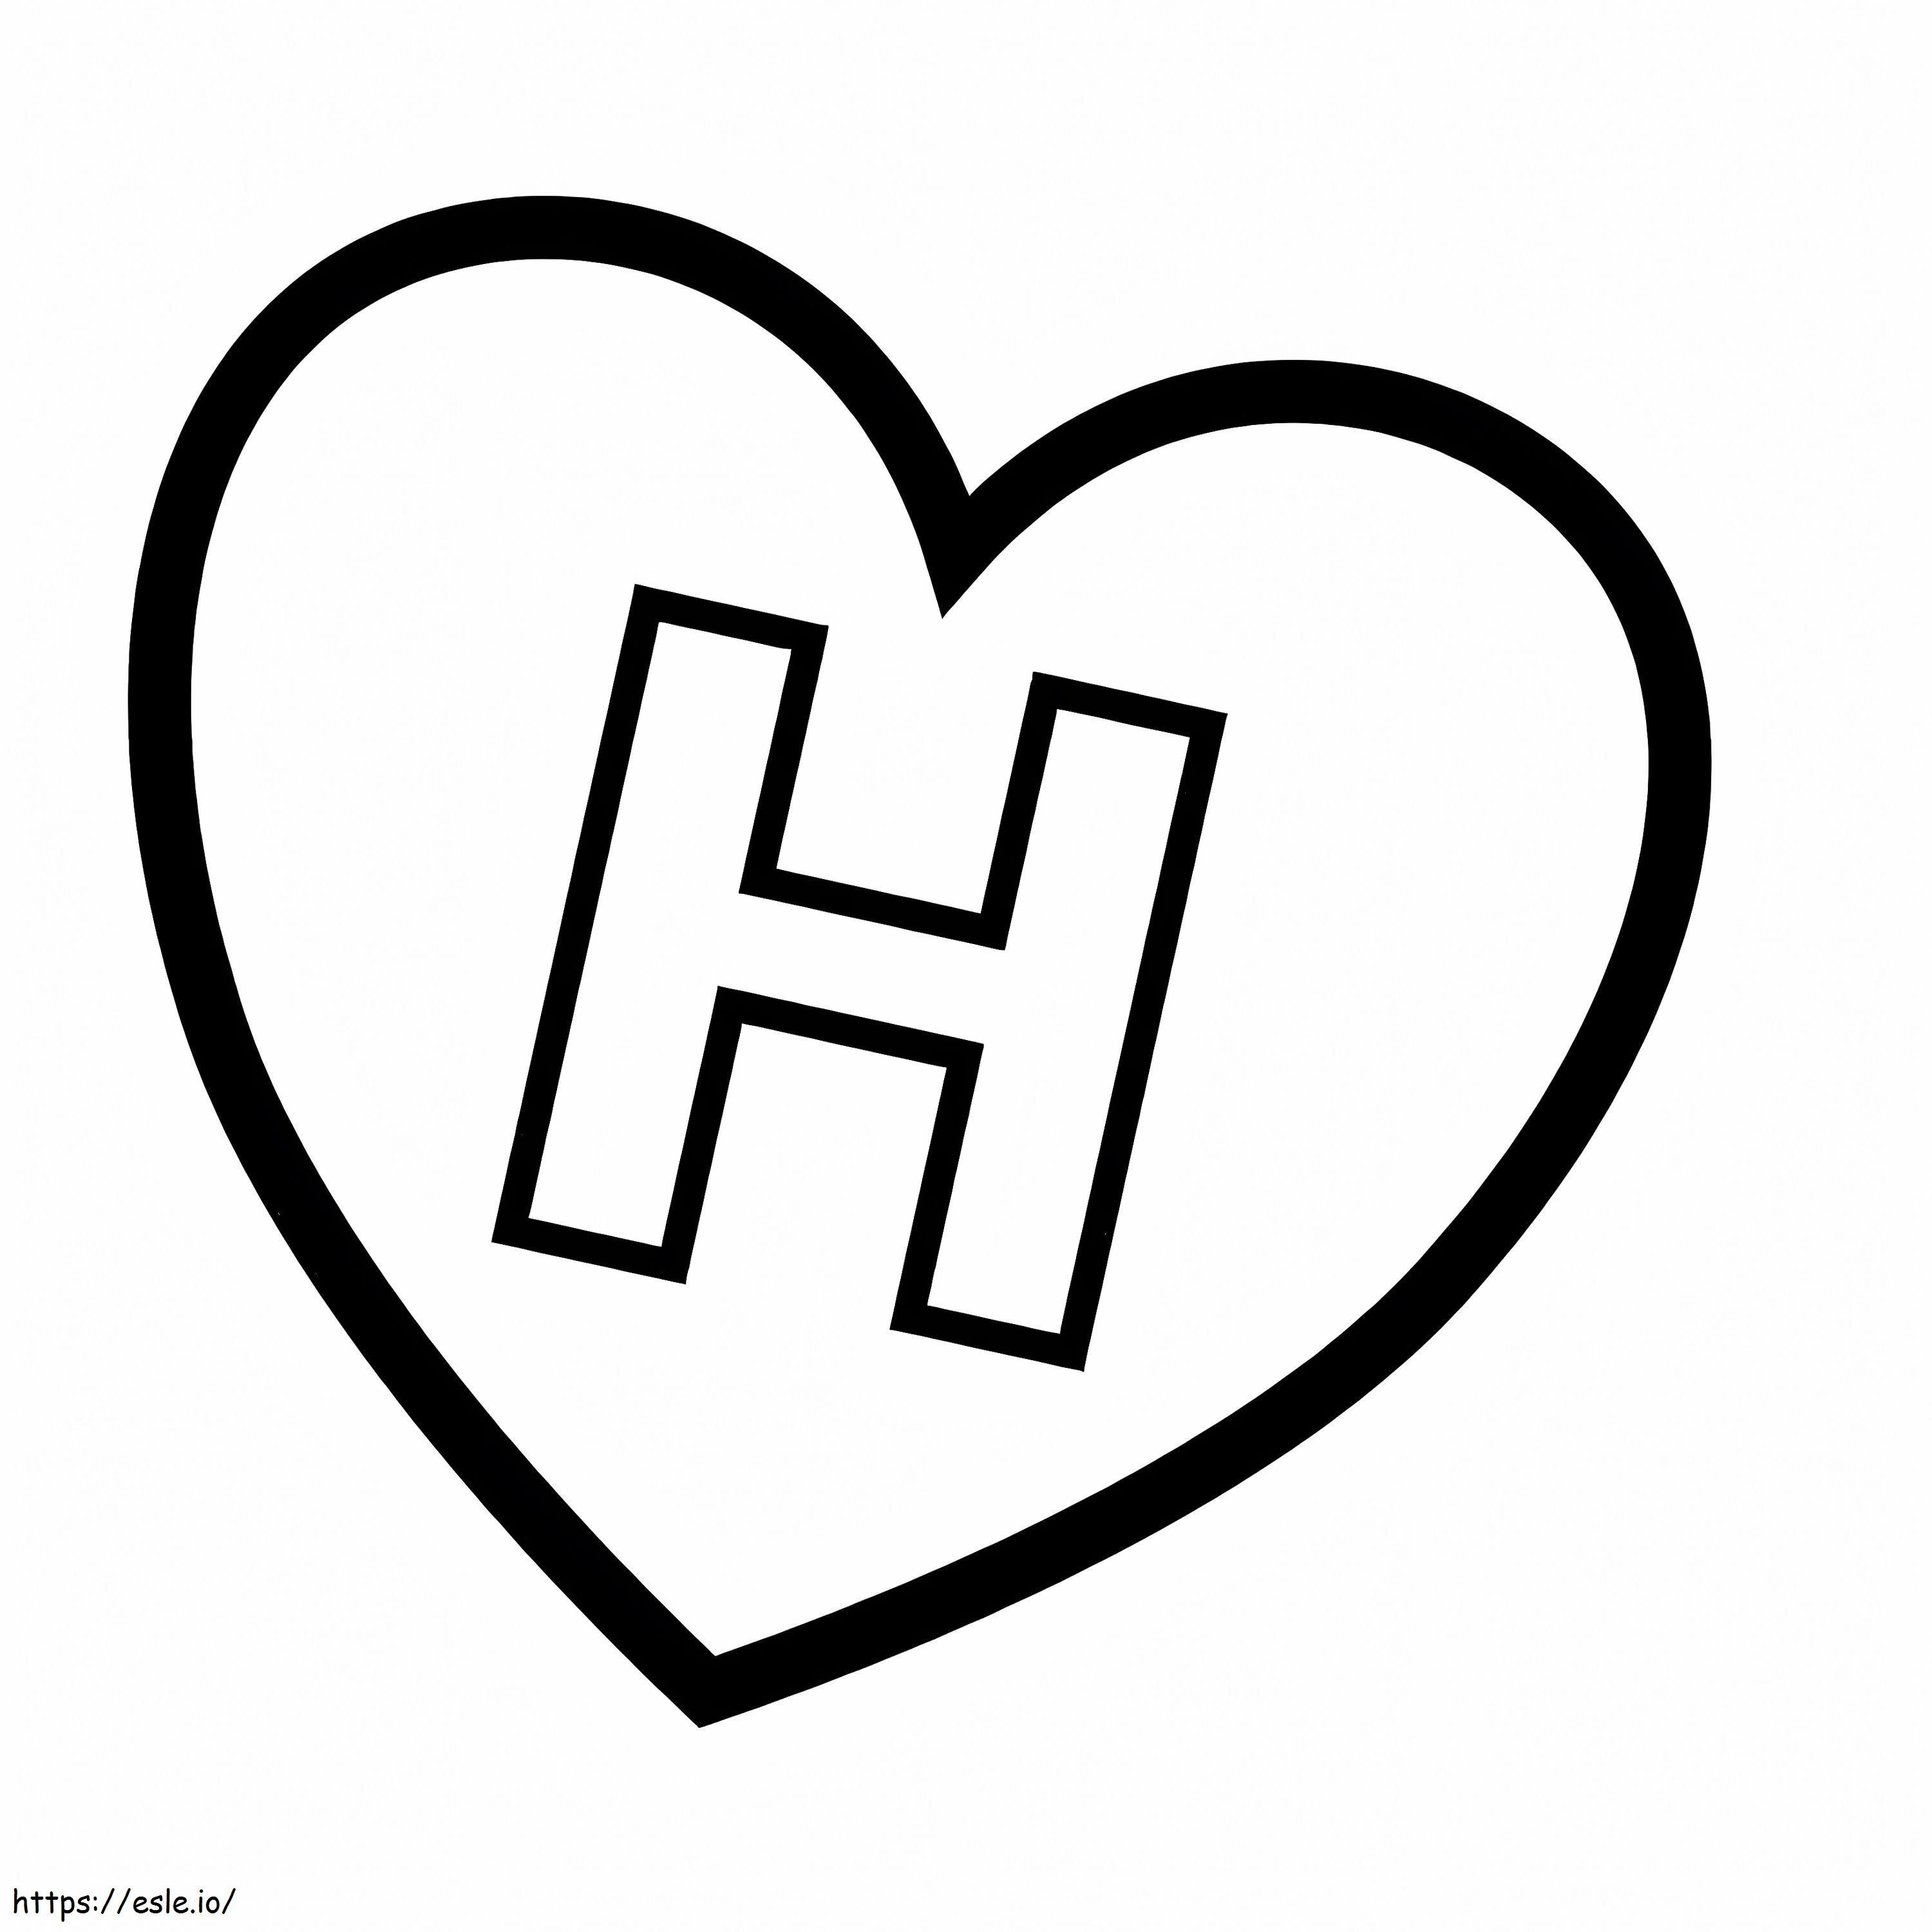 Letra H no coração para colorir